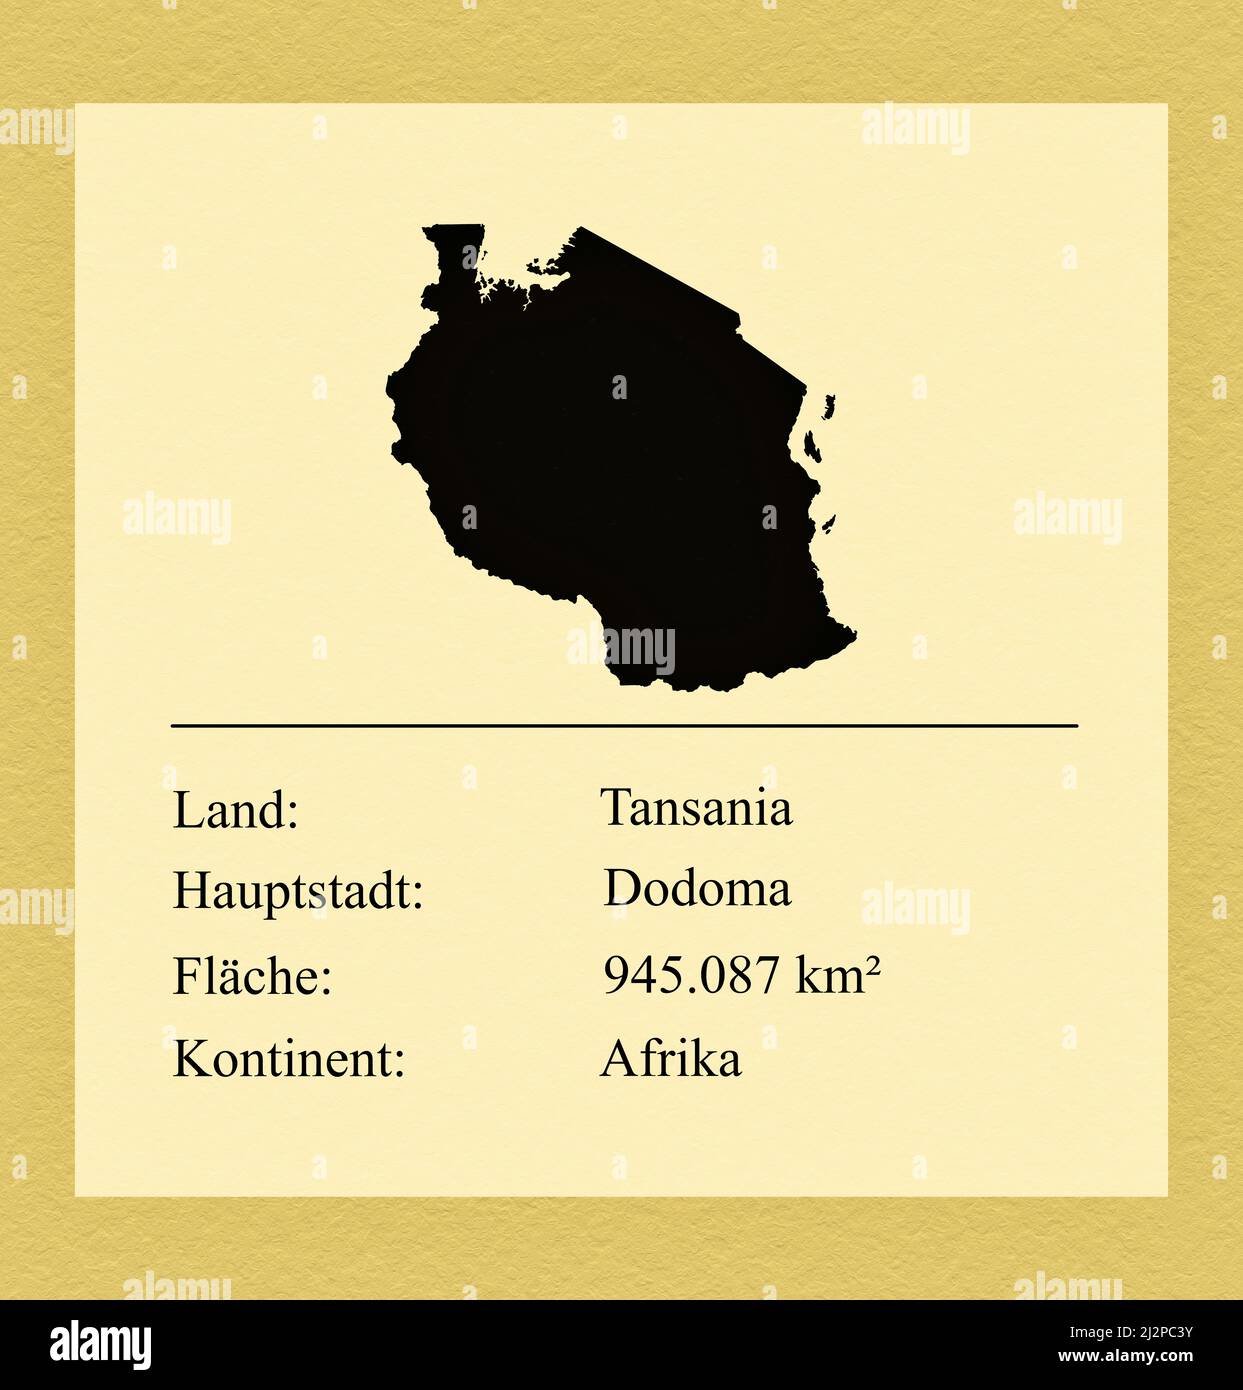 Umrisse des Landes Tansania, darunter ein kleiner Steckbrief mit Ländernamen, Hauptstadt, Fläche und Kontinent Foto de stock